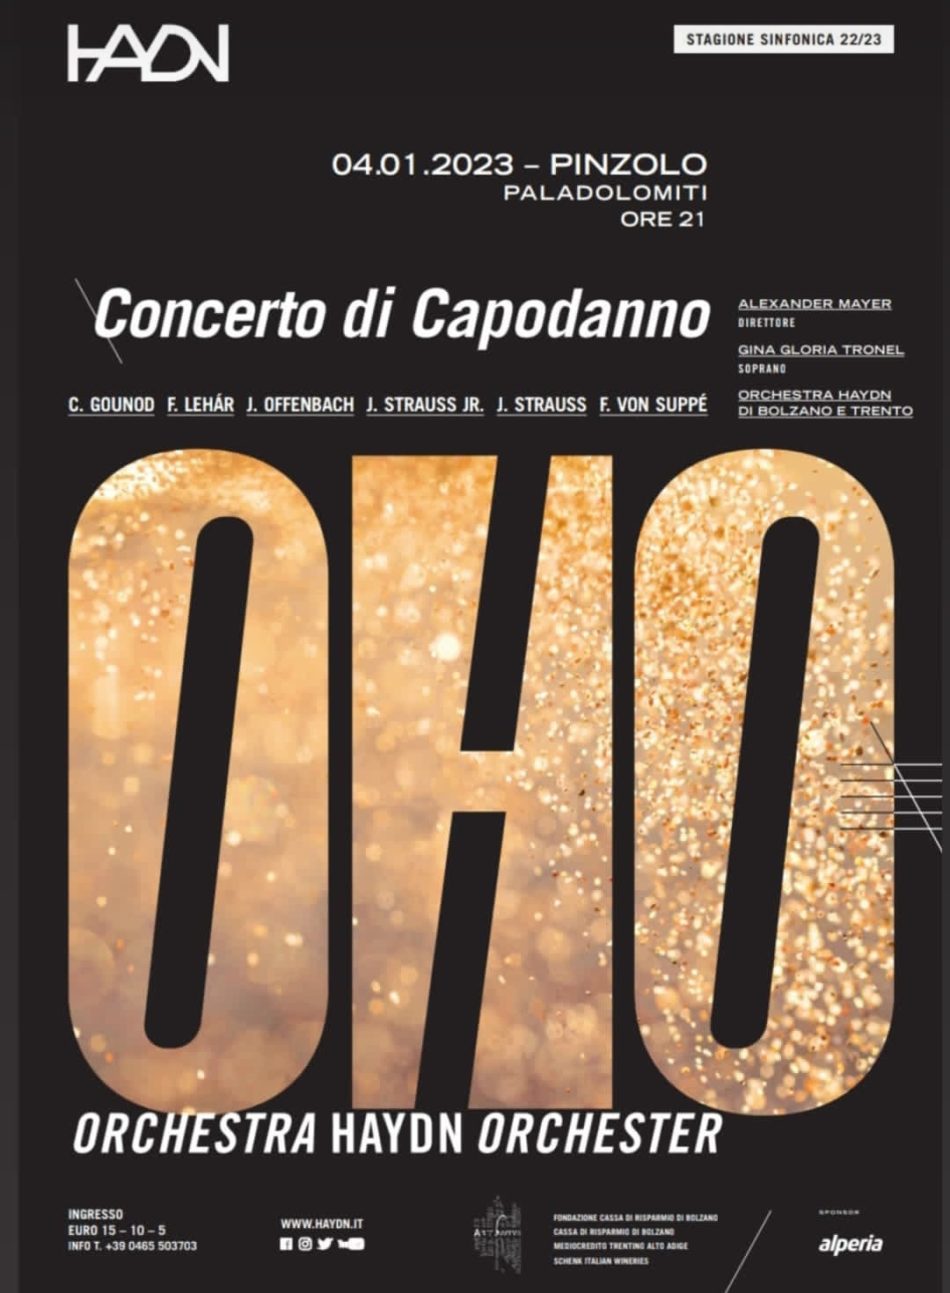 Pinzolo Paladolomiti 4 gennaio 2023: “Concerto di Capodanno” dell’Orchestra Haydn